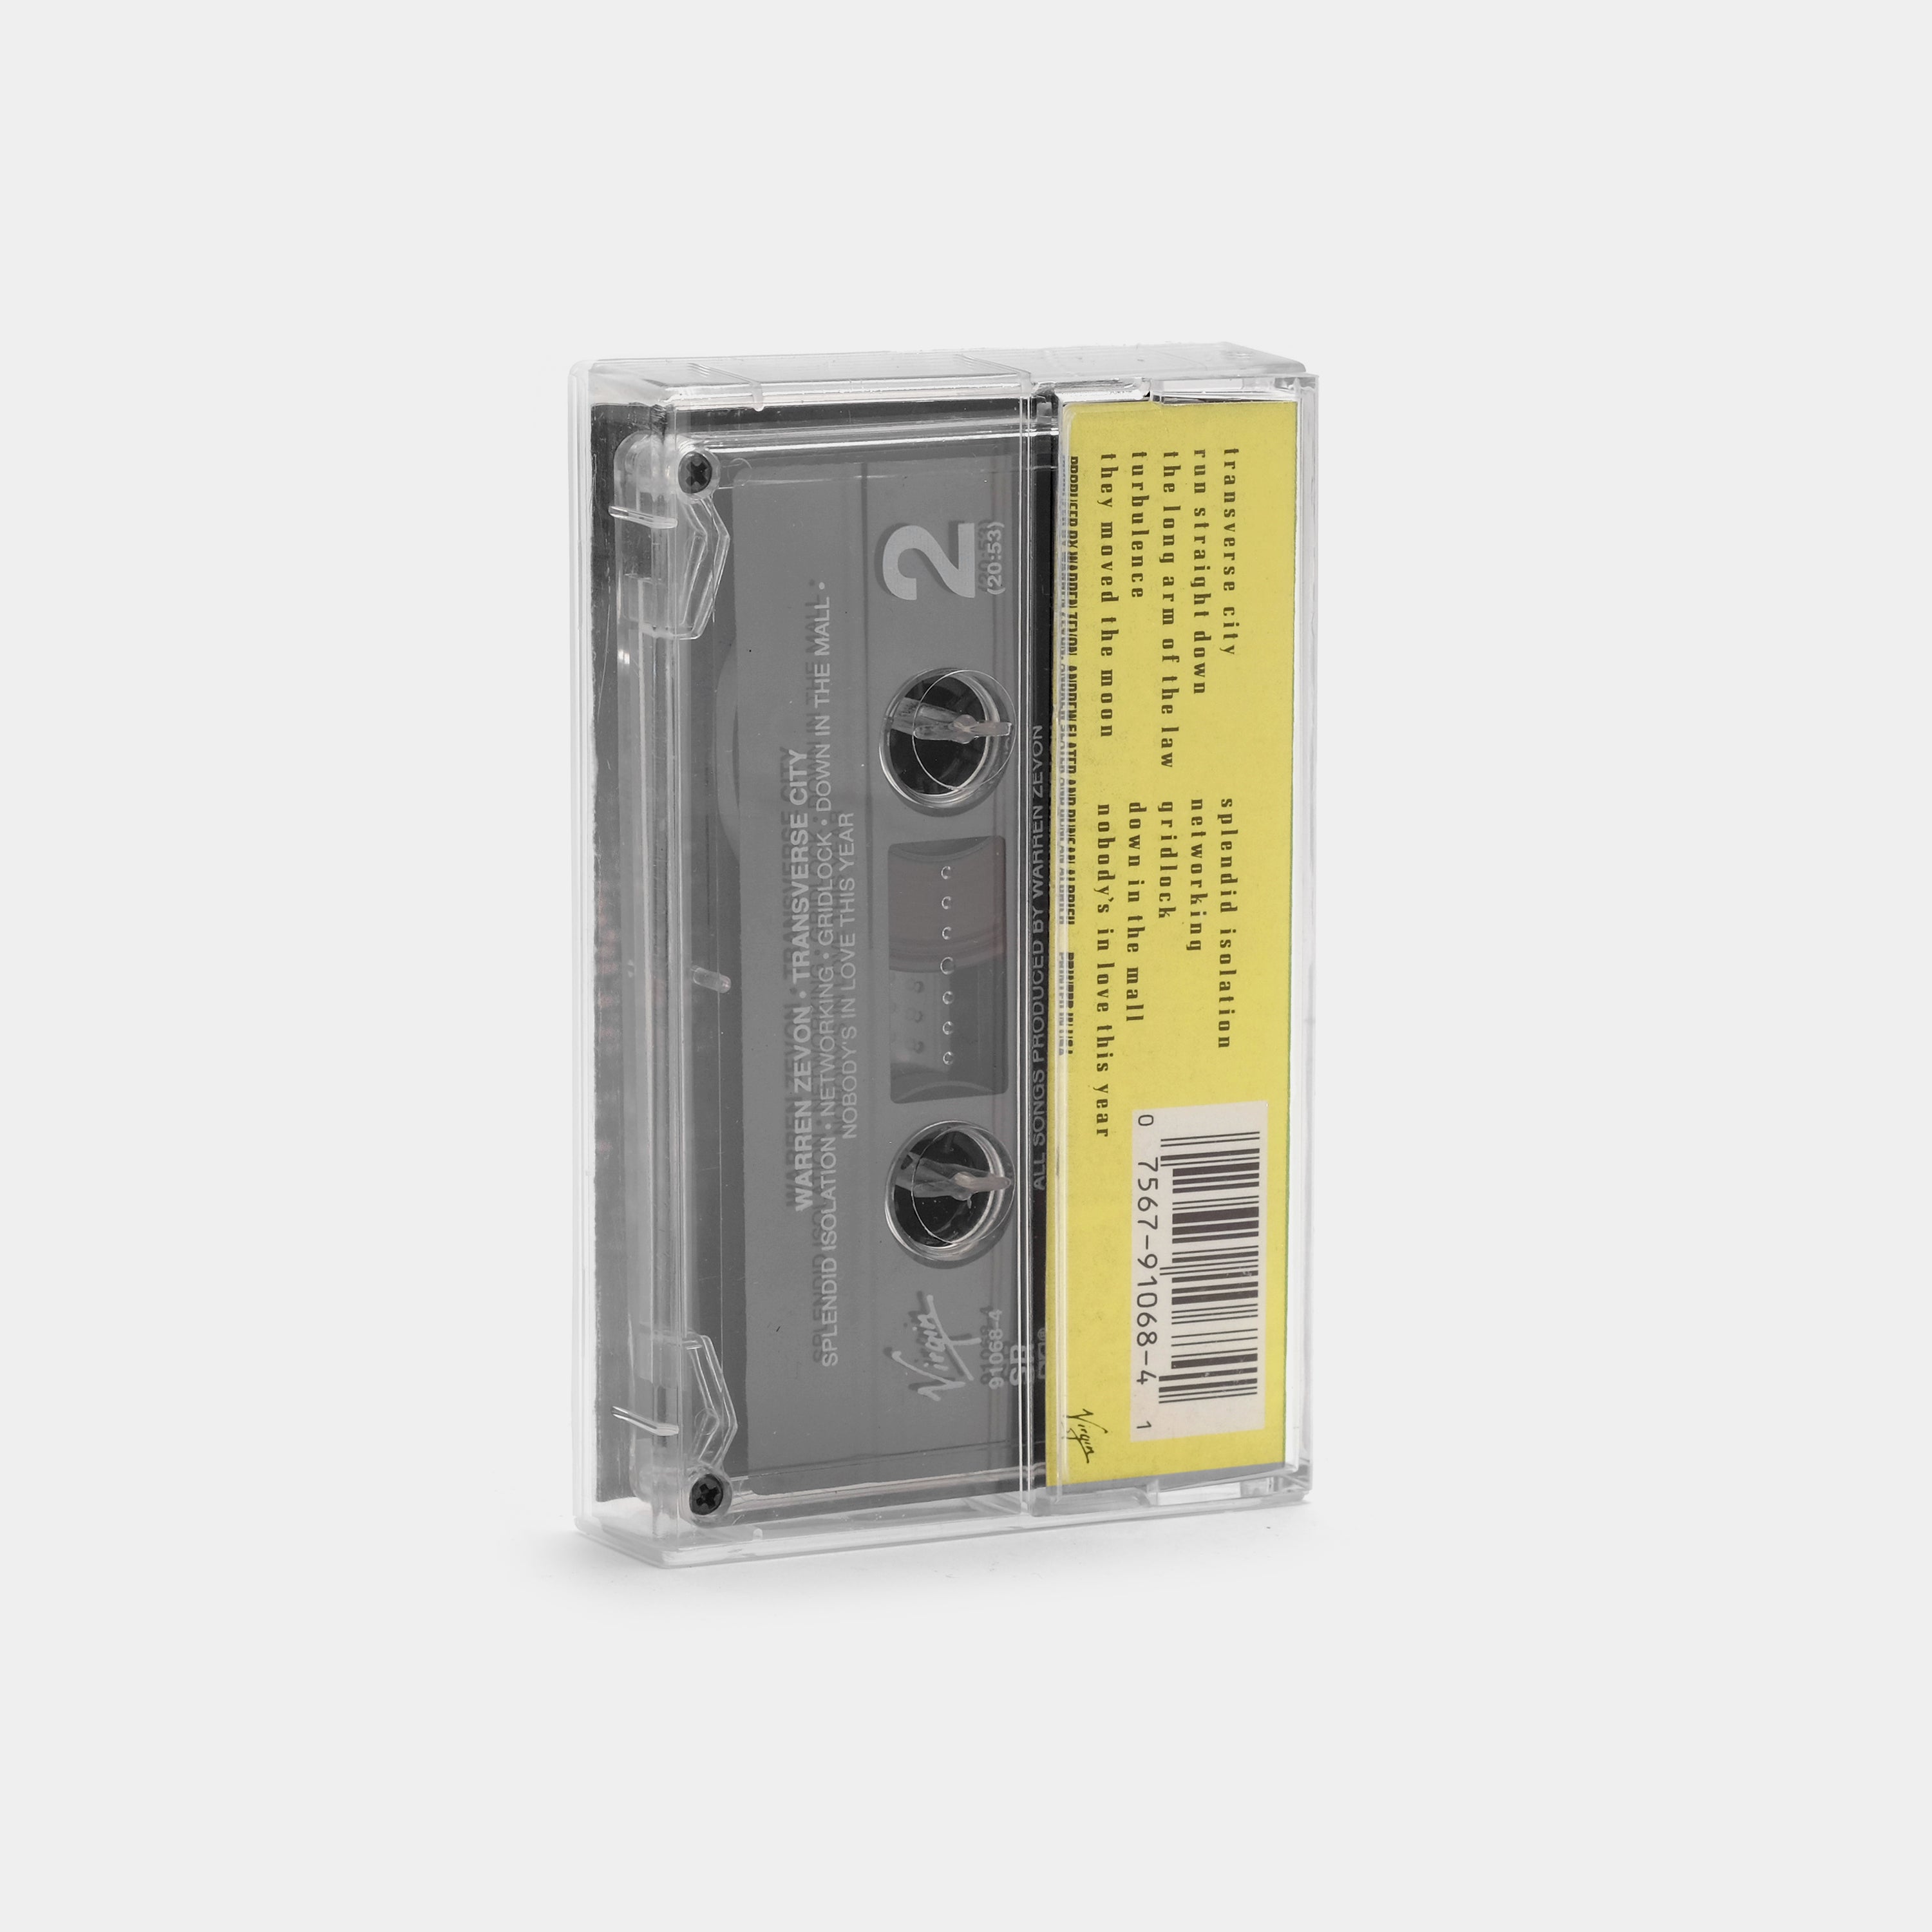 Warren Zevon - Transverse City Cassette Tape